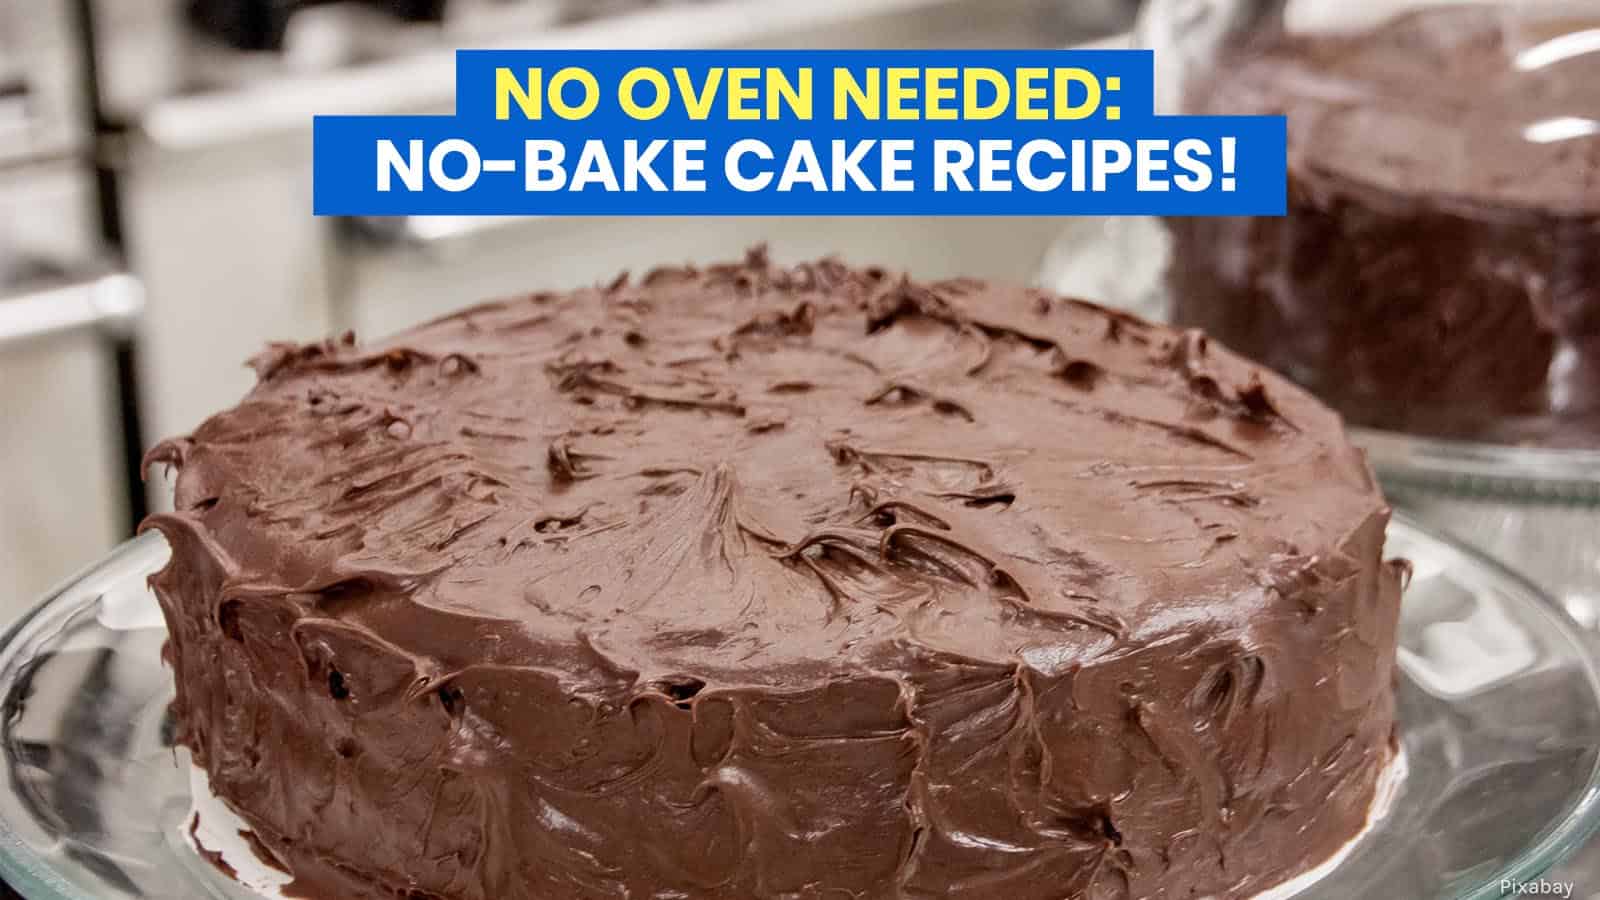 10个免烘焙蛋糕食谱:不需要烤箱!